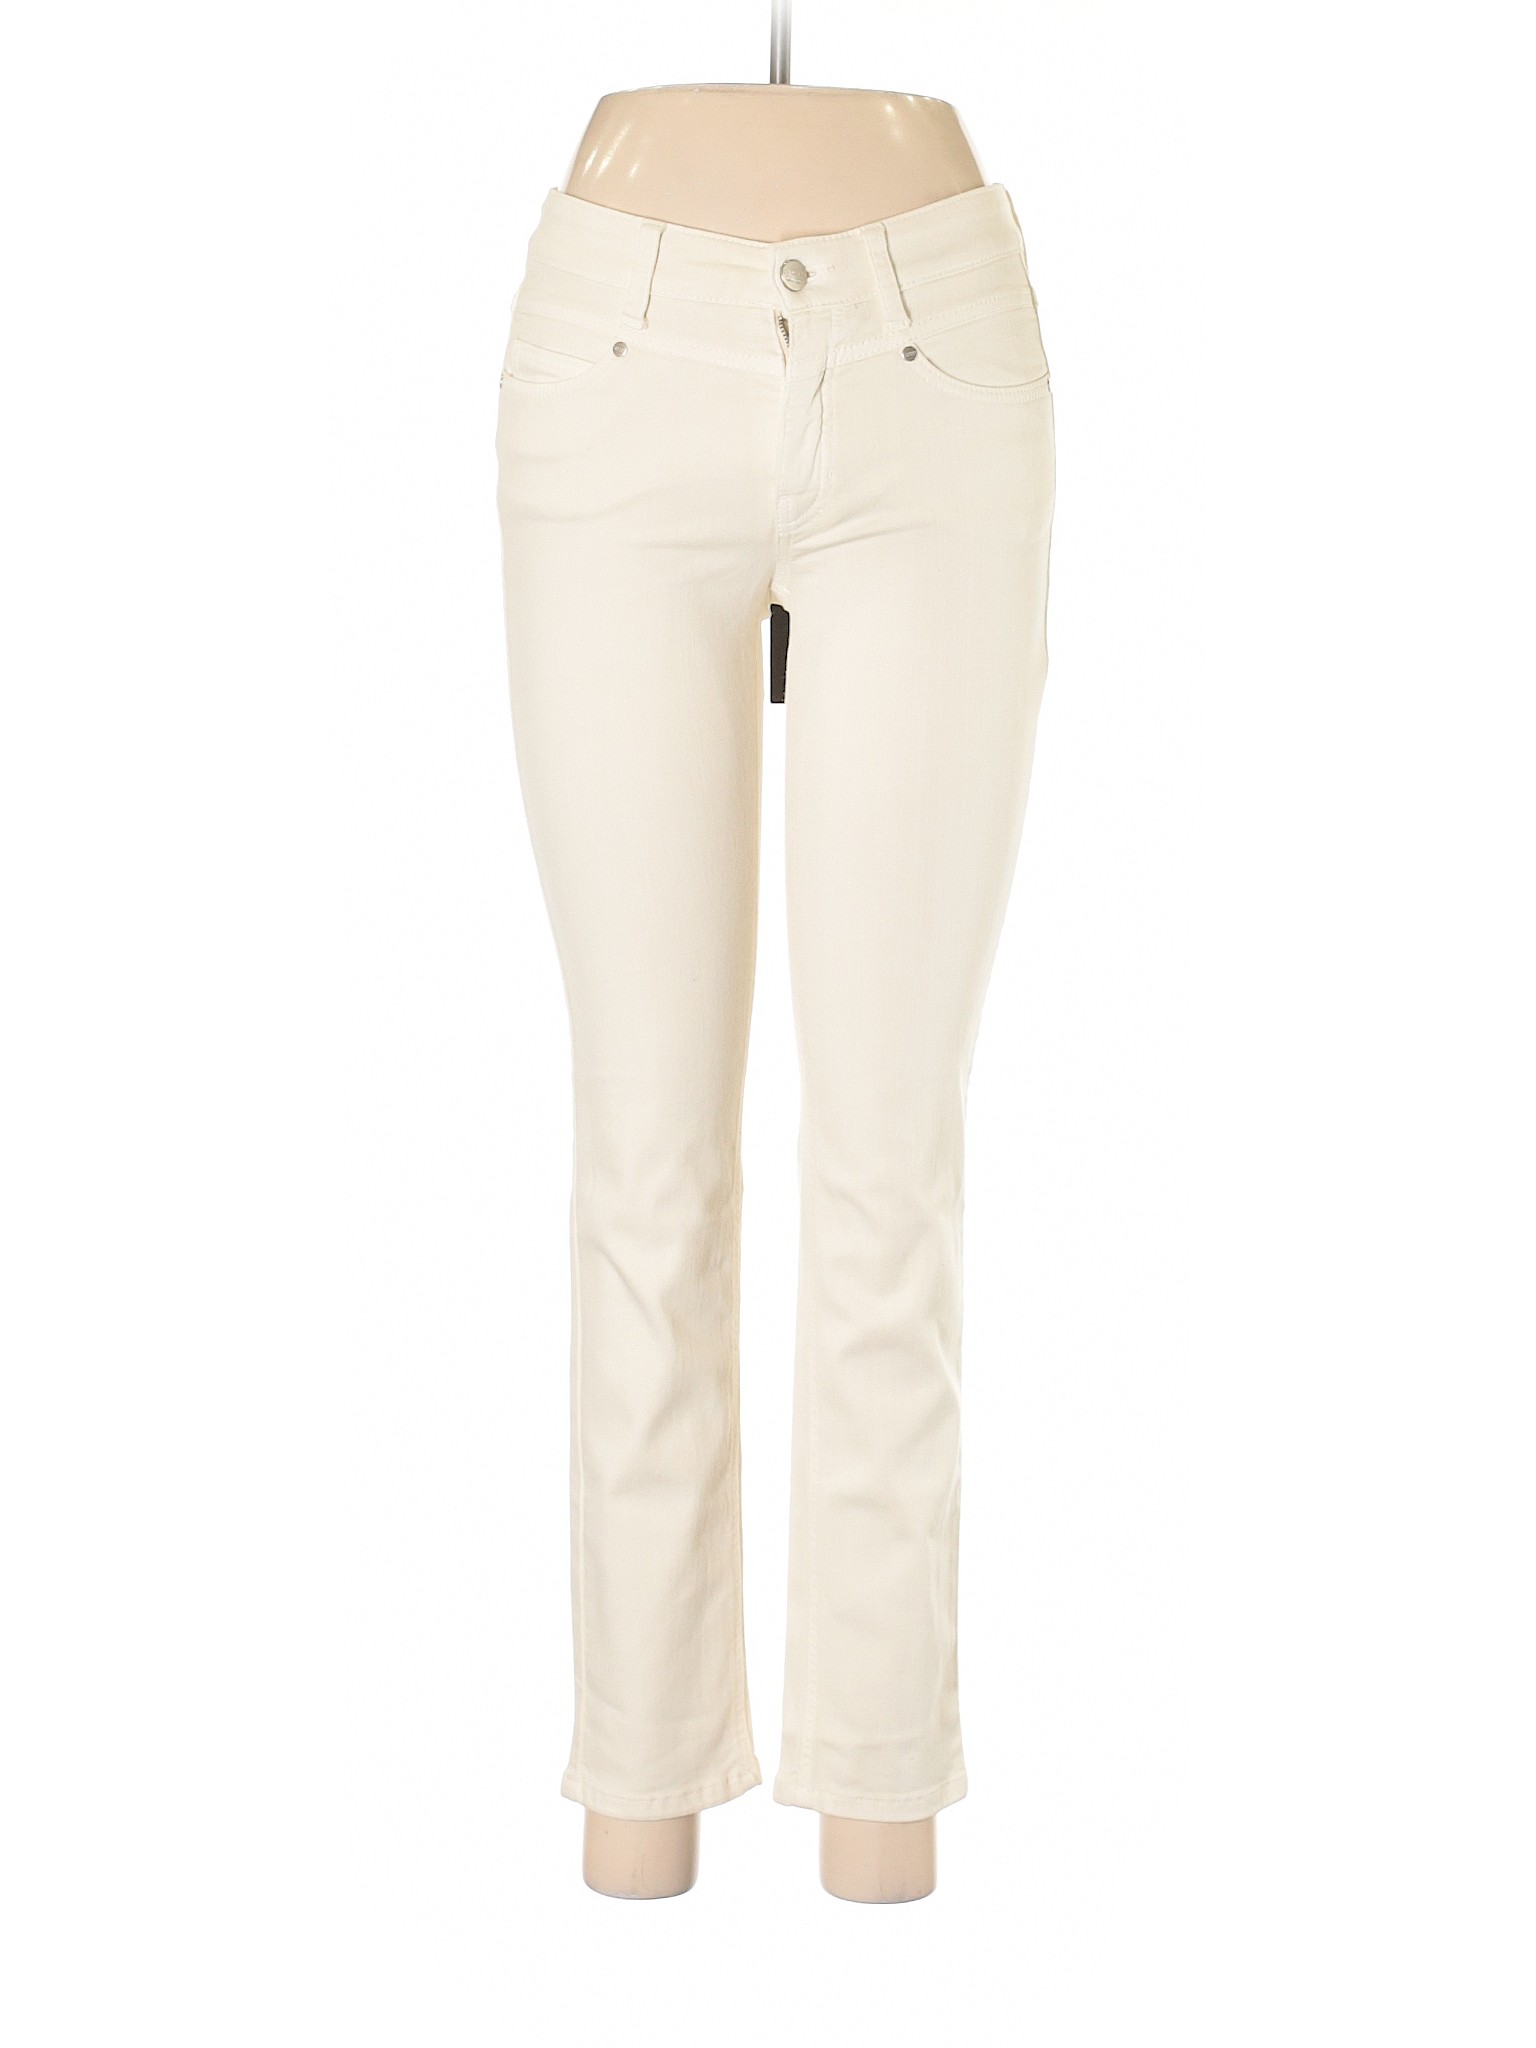 NWT Cambio Jeans Women Ivory Jeans 28W | eBay